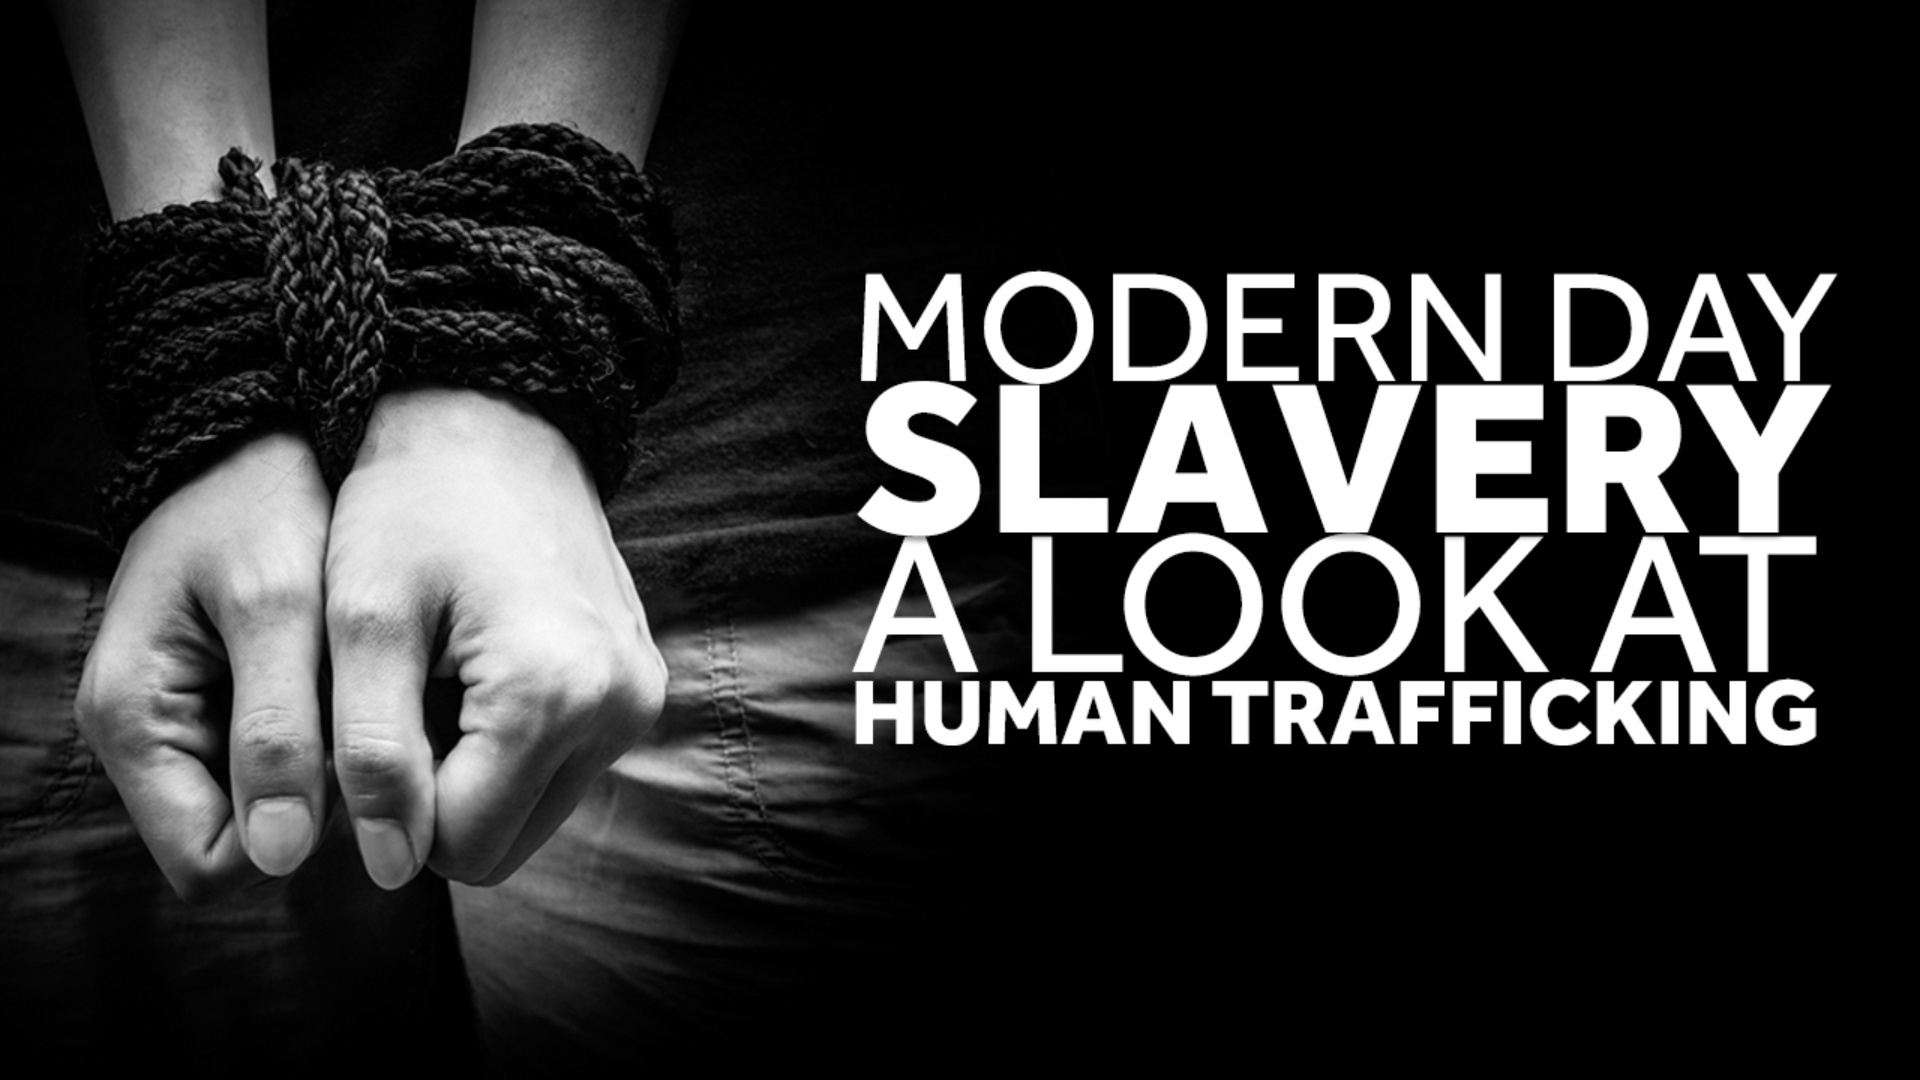 Države Commonwealtha moraju poduzeti više kako bi zaustavile trgovinu ljudima